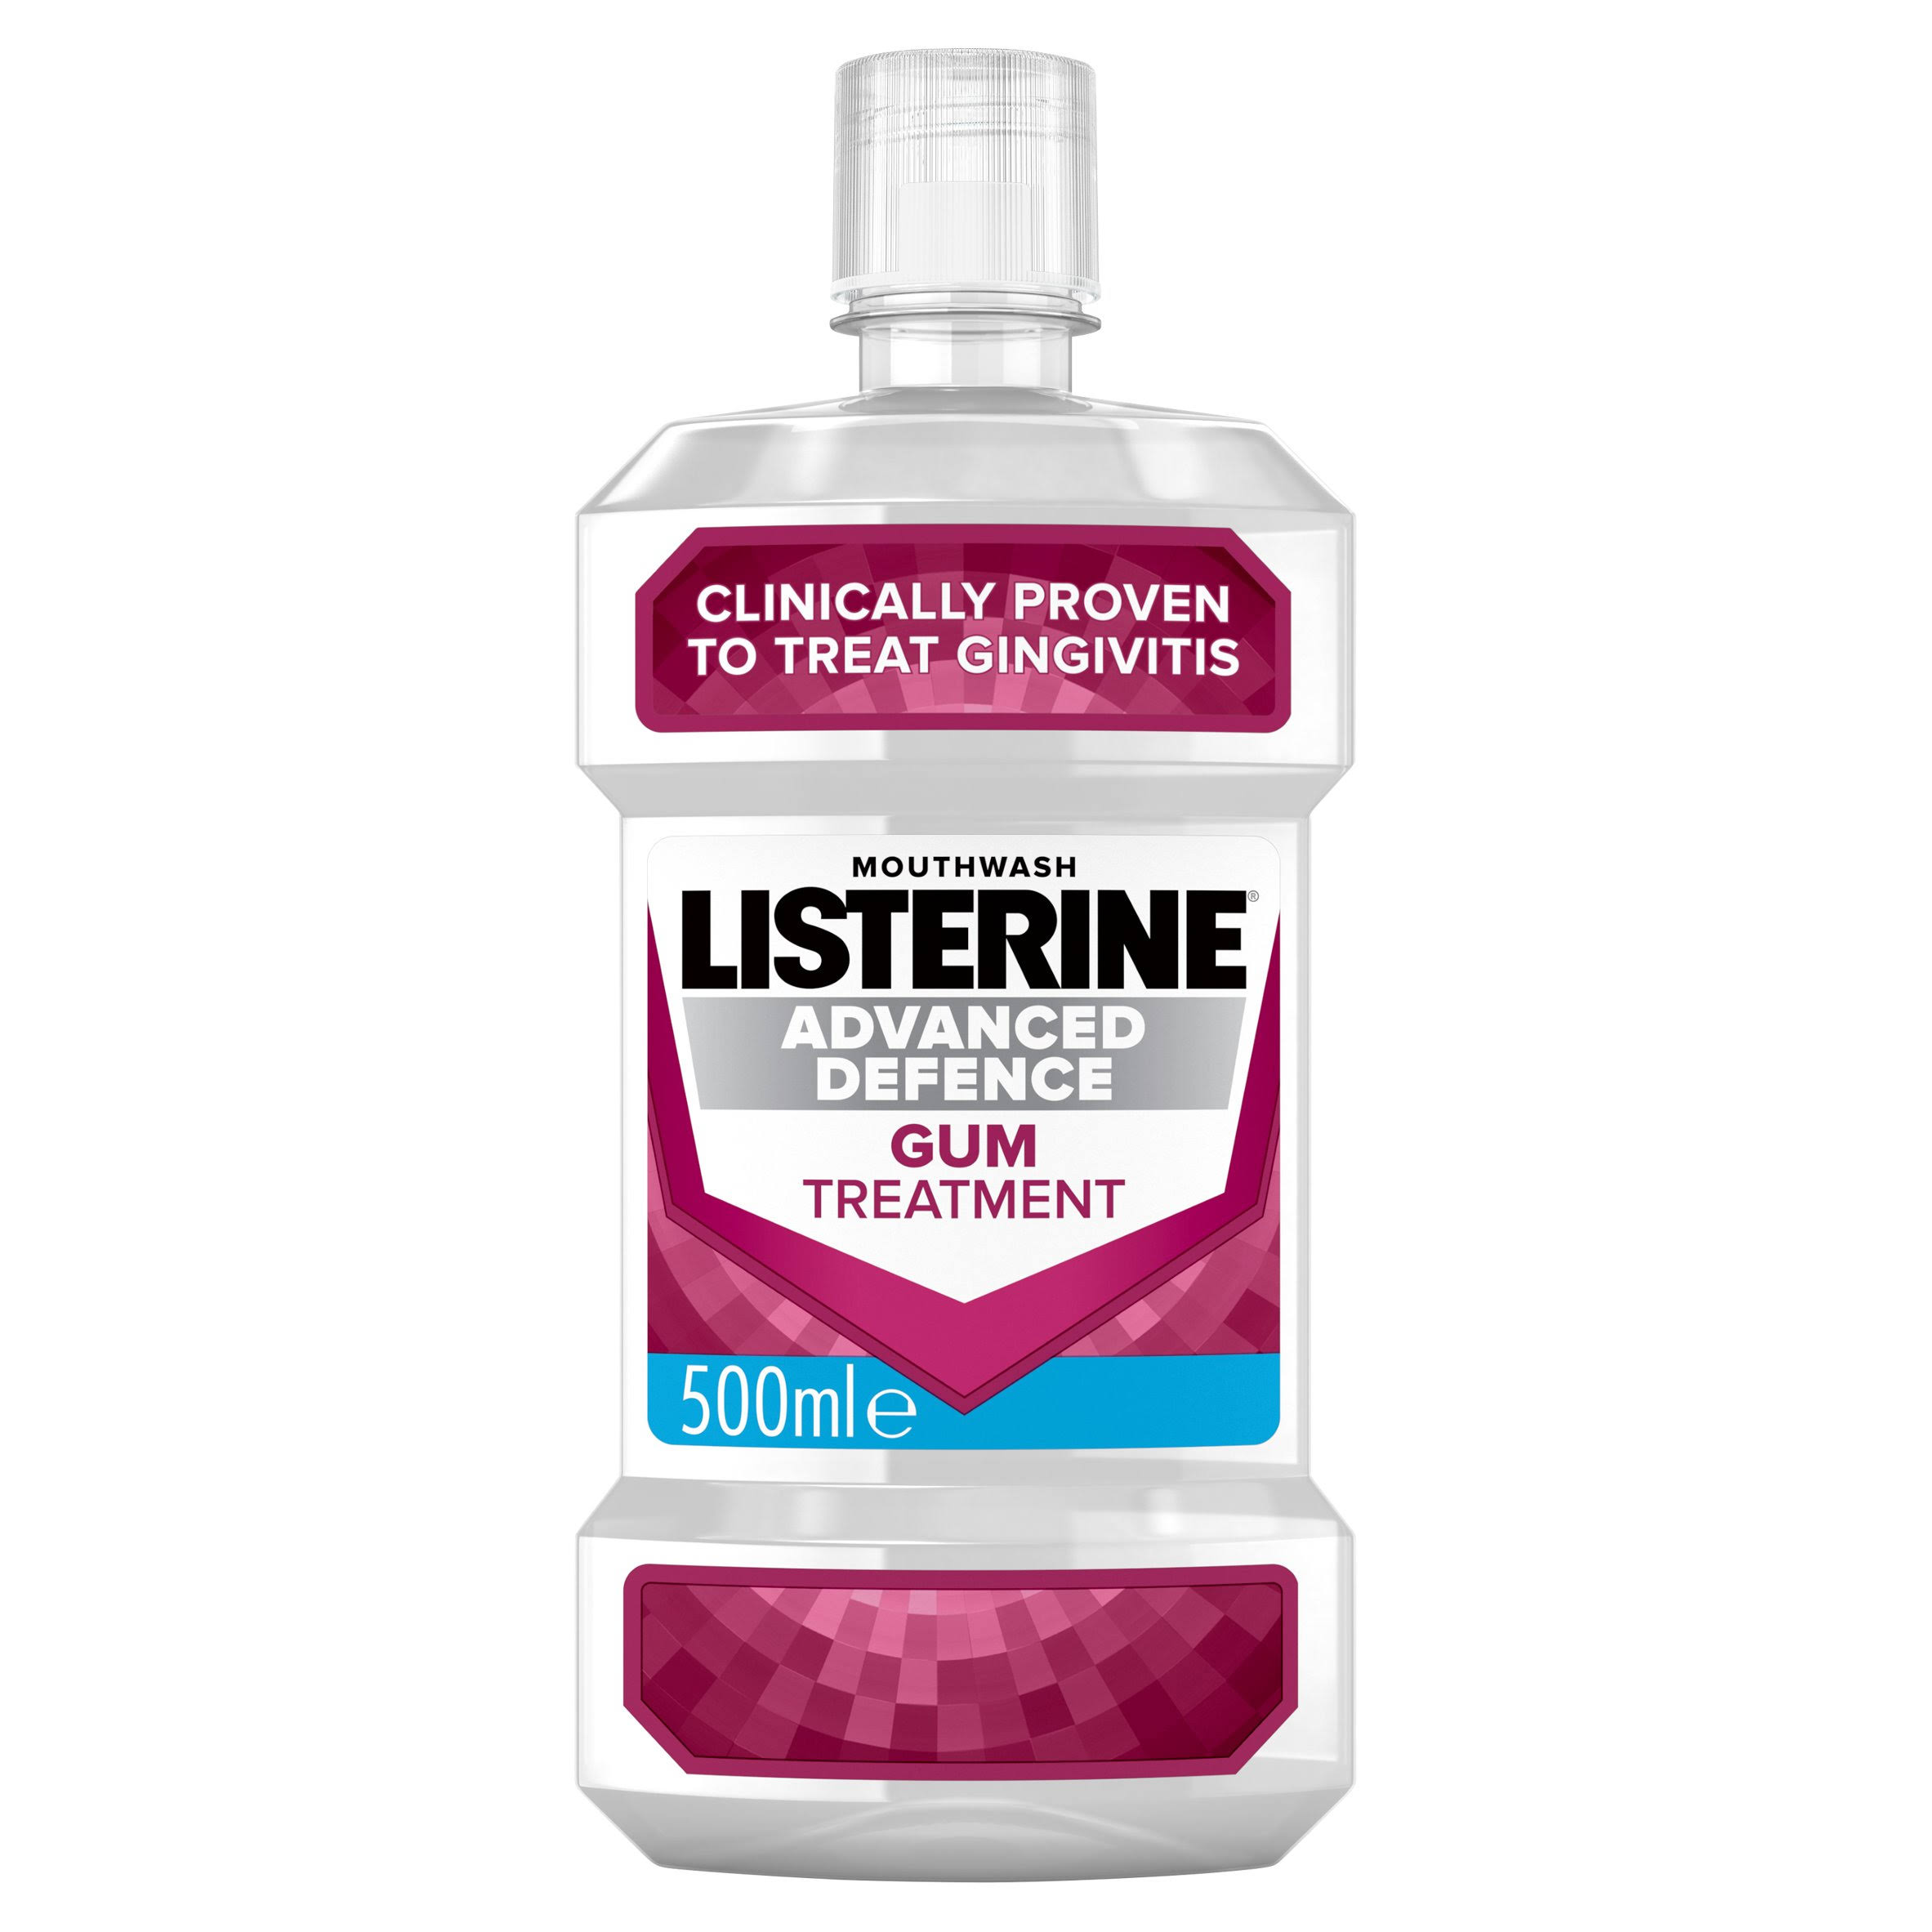 Listerine Advanced Defence Gum Treatment Mouthwash - Crisp Mint, 500ml